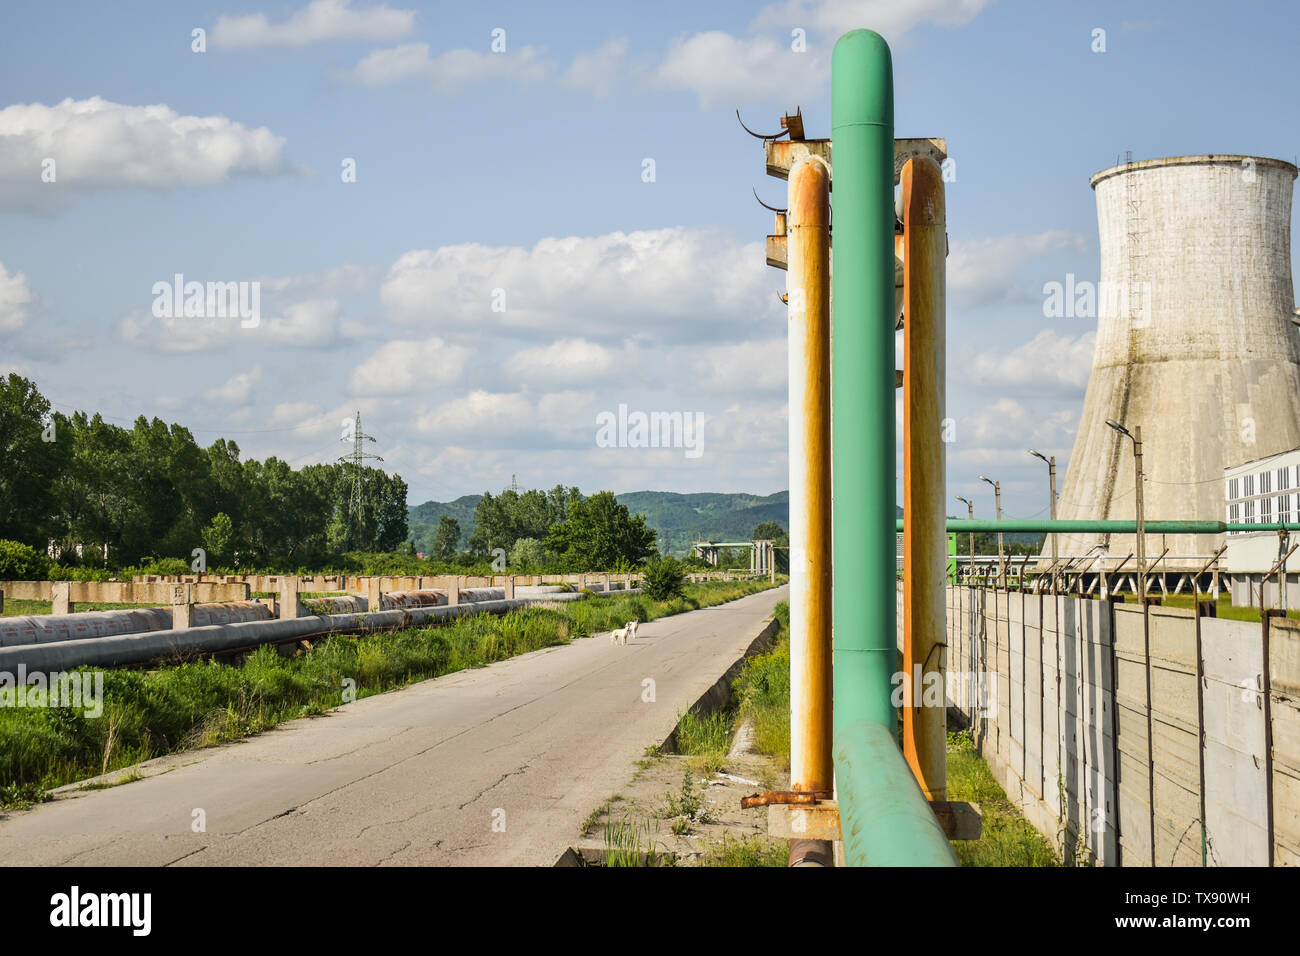 Blick auf die Straße im alten Kraftwerk mit großen konkreten Öfen. Gefallenen chemische kommunistische Industrie. Stockfoto